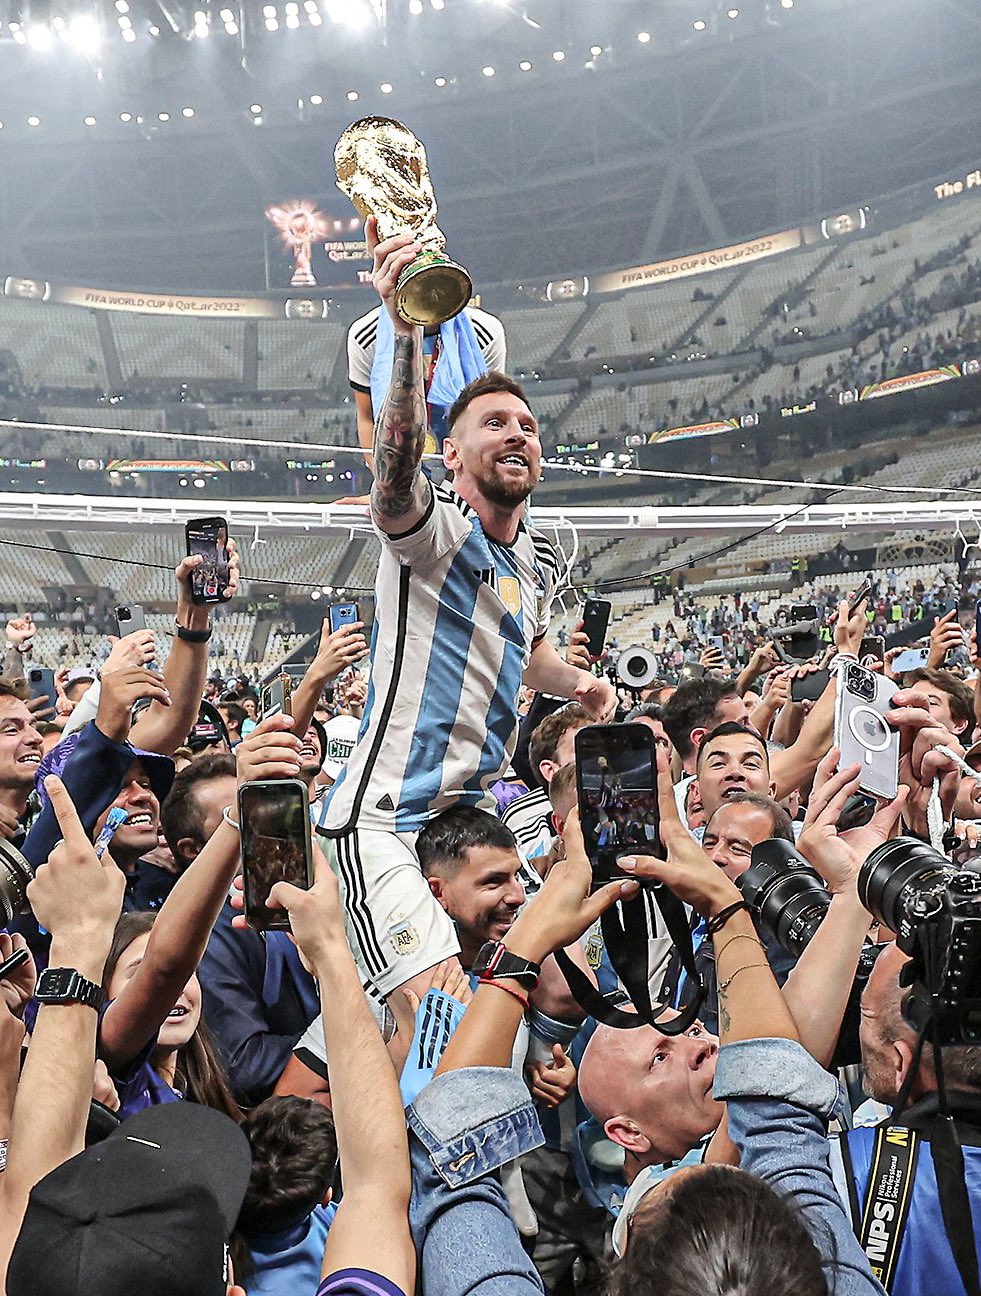 Xem hình ảnh Messi cầm cúp vàng vang danh giải đấu lớn này, bạn sẽ được chứng kiến sức mạnh và tài năng của một thần đồng bóng đá thế giới.